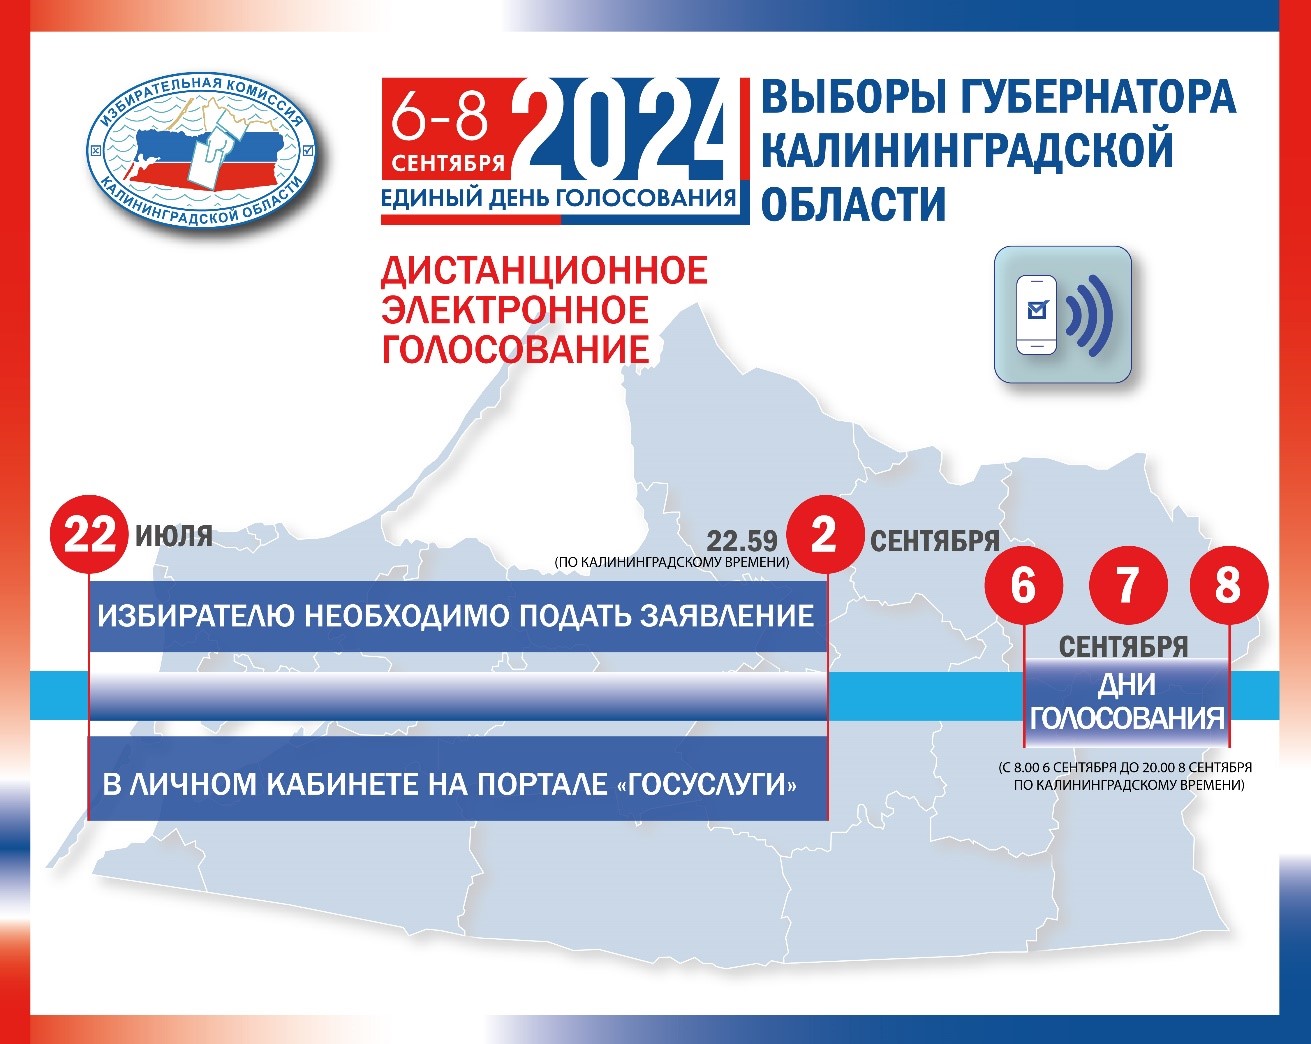 С сегодняшнего дня в Калининградской области можно подать заявление для участия в дистанционном электронном голосовании